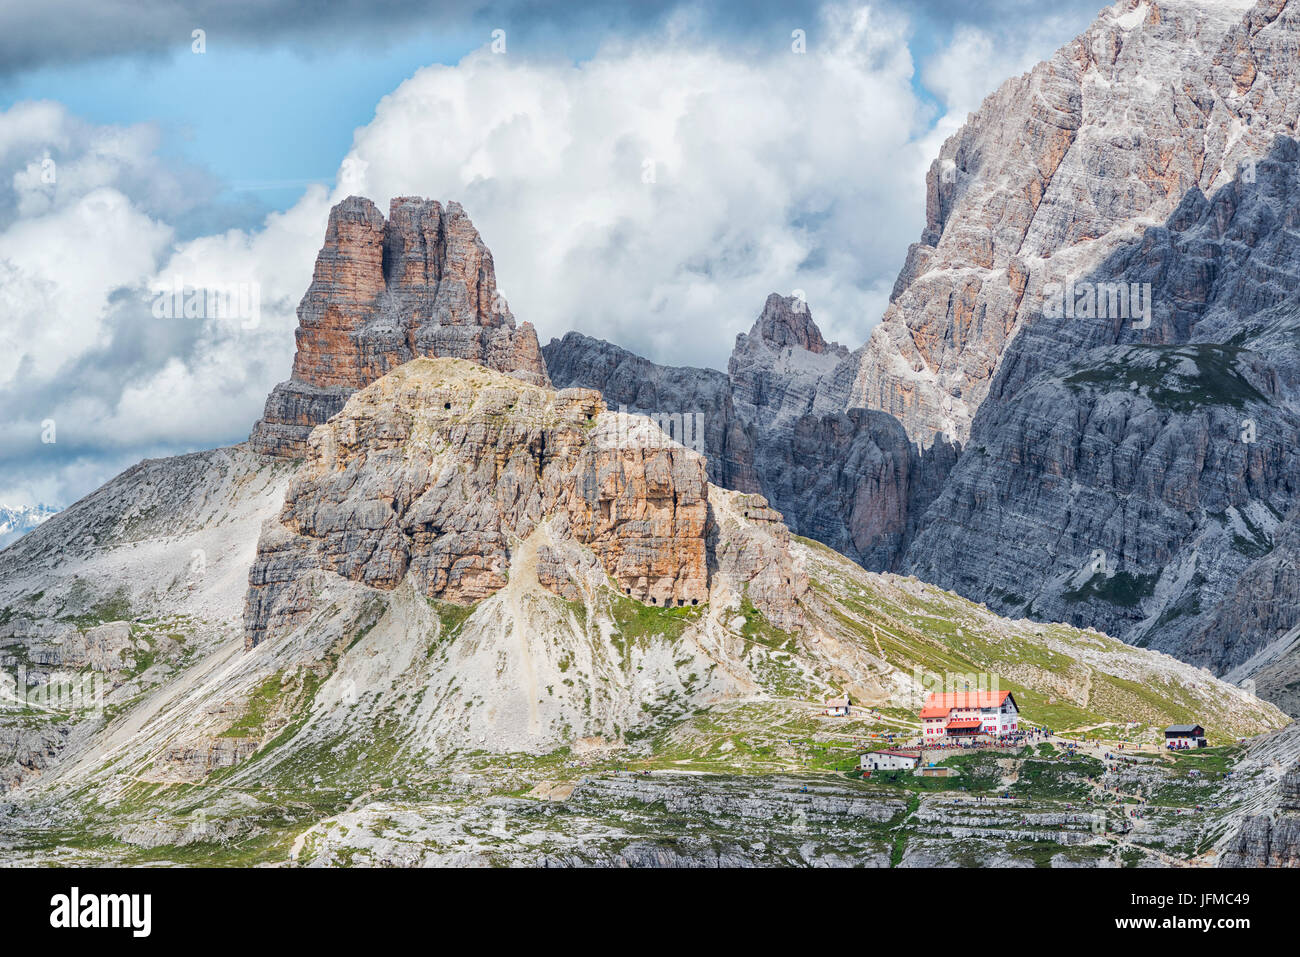 Trentino Alto Adige, Italien, Europa-Park von Tre Cime di Lavaredo, die Dolomiten, die während einem Tag mit Wolken, im Hintergrund sehen Sie Mount Paterno und die Hütte Locatelli Stockfoto